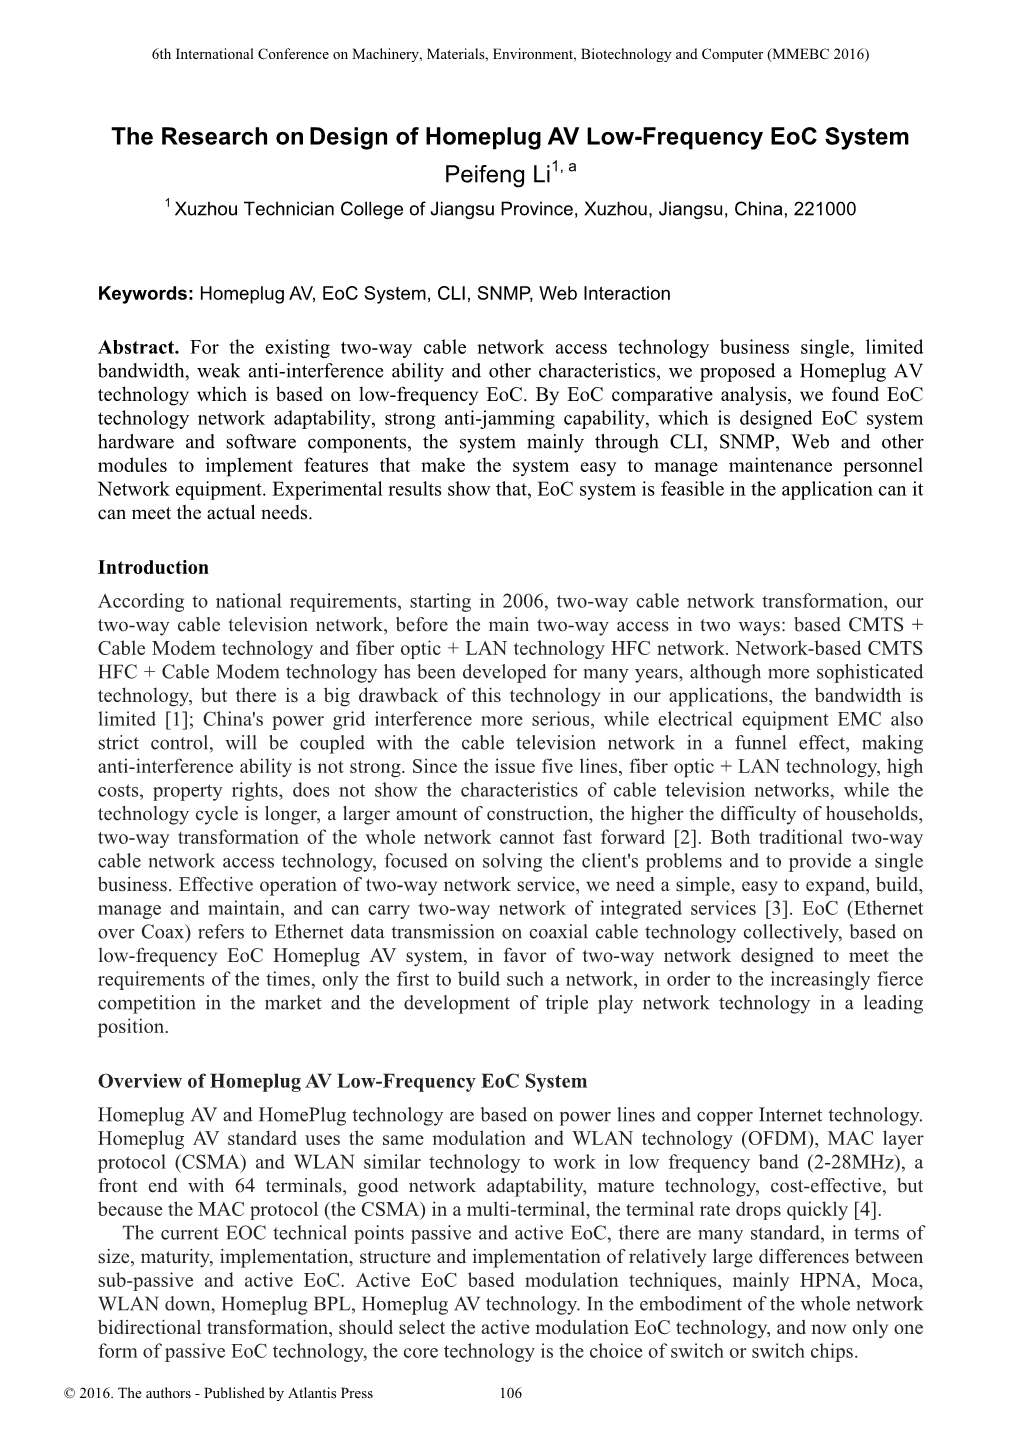 The Research on Design of Homeplug AV Low-Frequency Eoc System Peifeng Li1, a 1 Xuzhou Technician College of Jiangsu Province, Xuzhou, Jiangsu, China, 221000